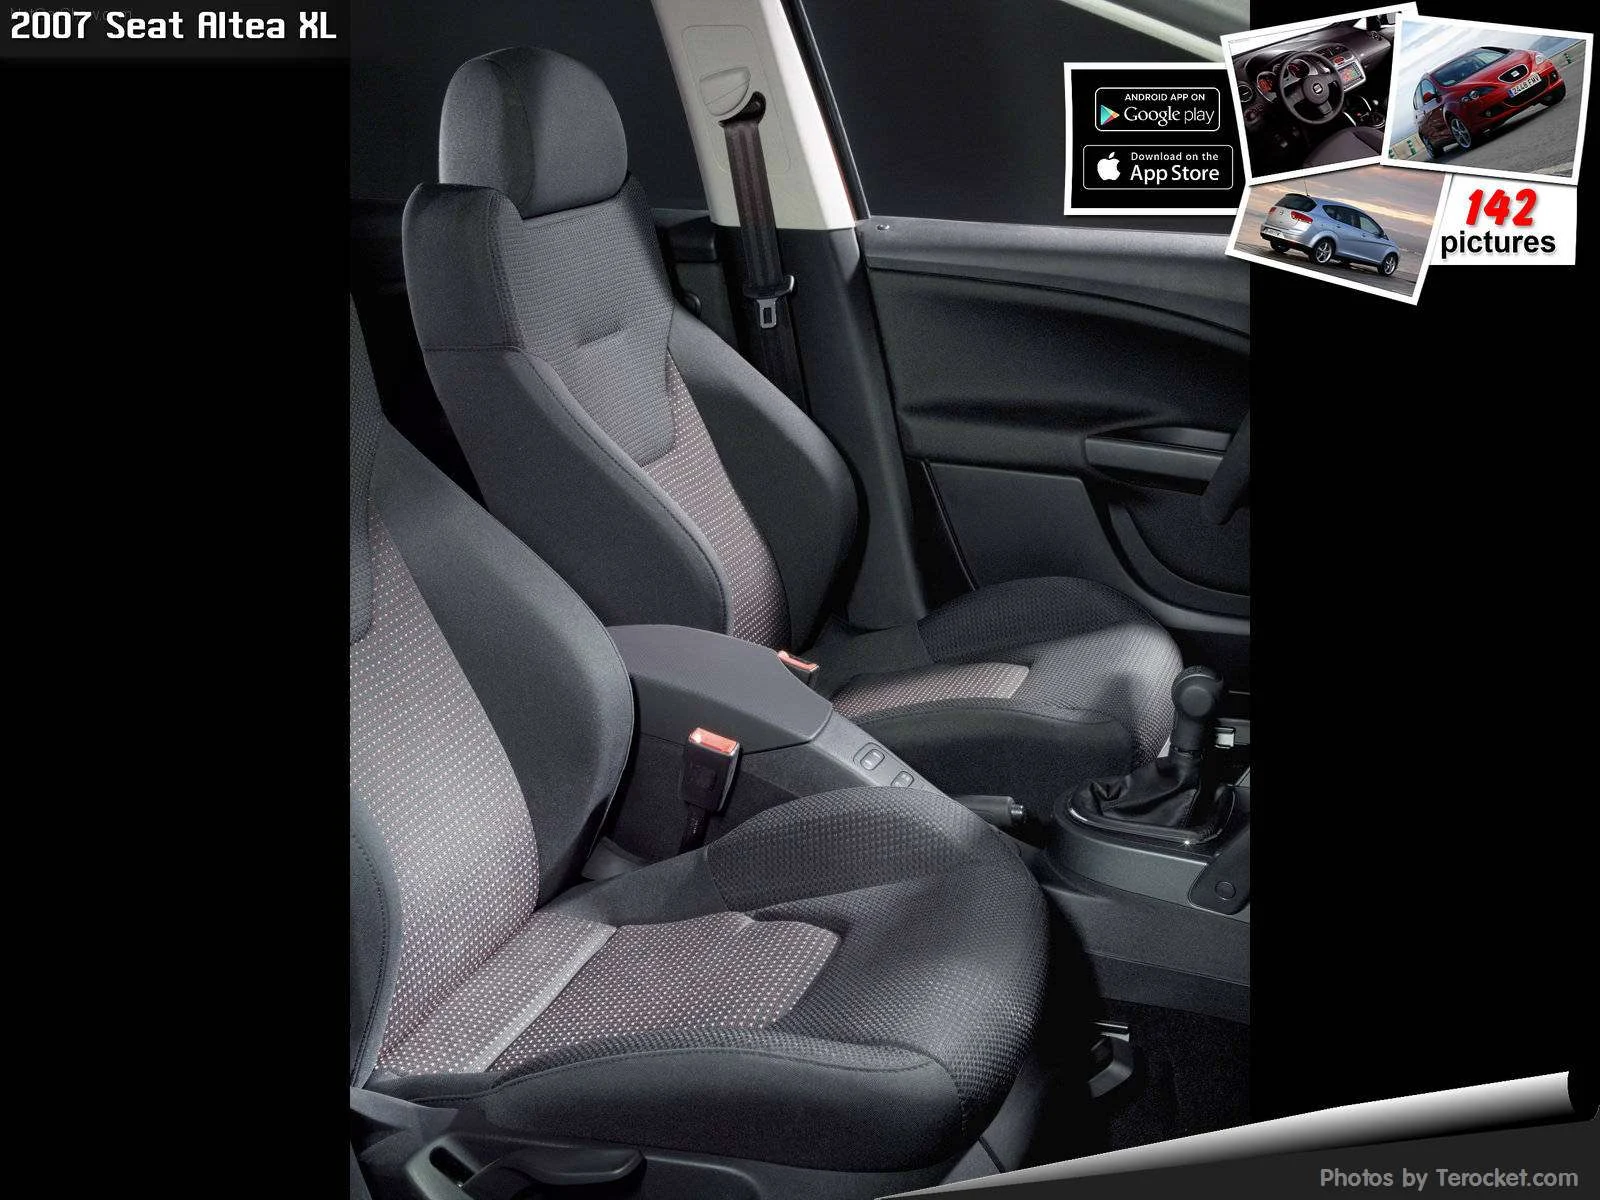 Hình ảnh xe ô tô Seat Altea XL 2007 & nội ngoại thất